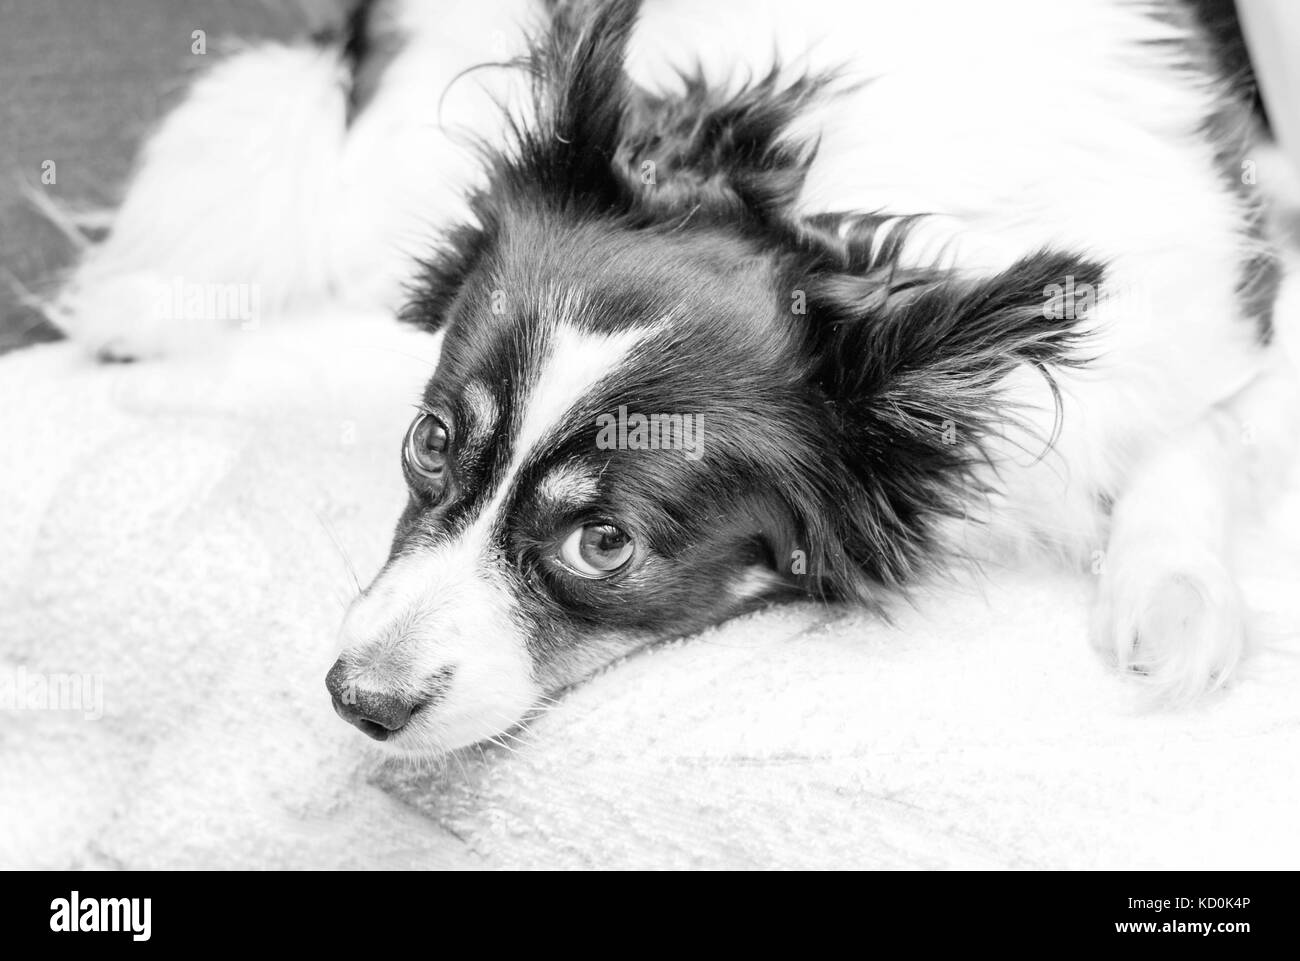 Abbastanza adulto in bianco e nero cane con occhi marroni guarda pietosamente in bianco e nero Foto Stock